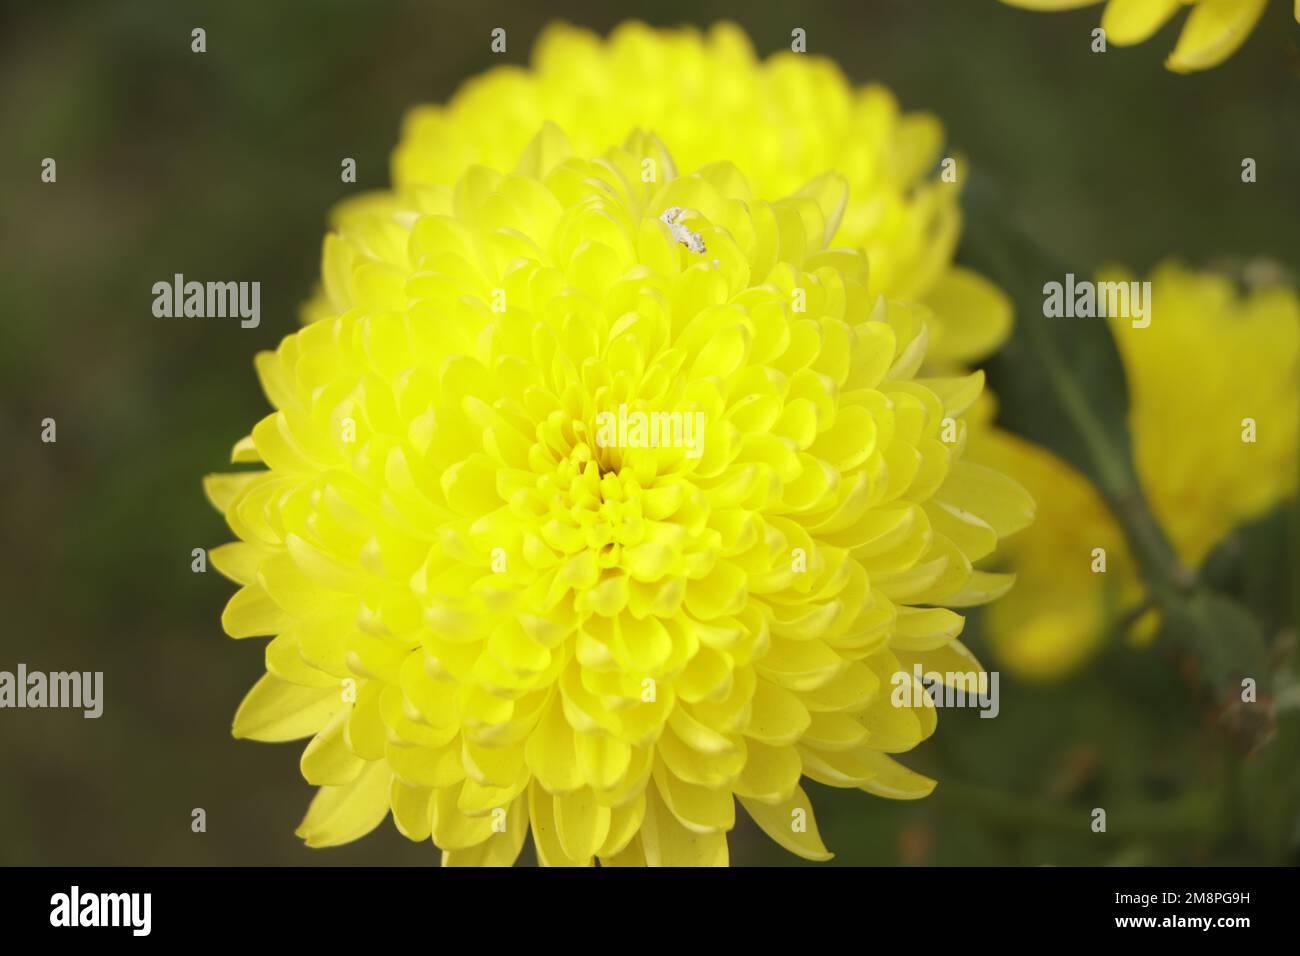 yellow Chrysanthemum blooming in garden Stock Photo